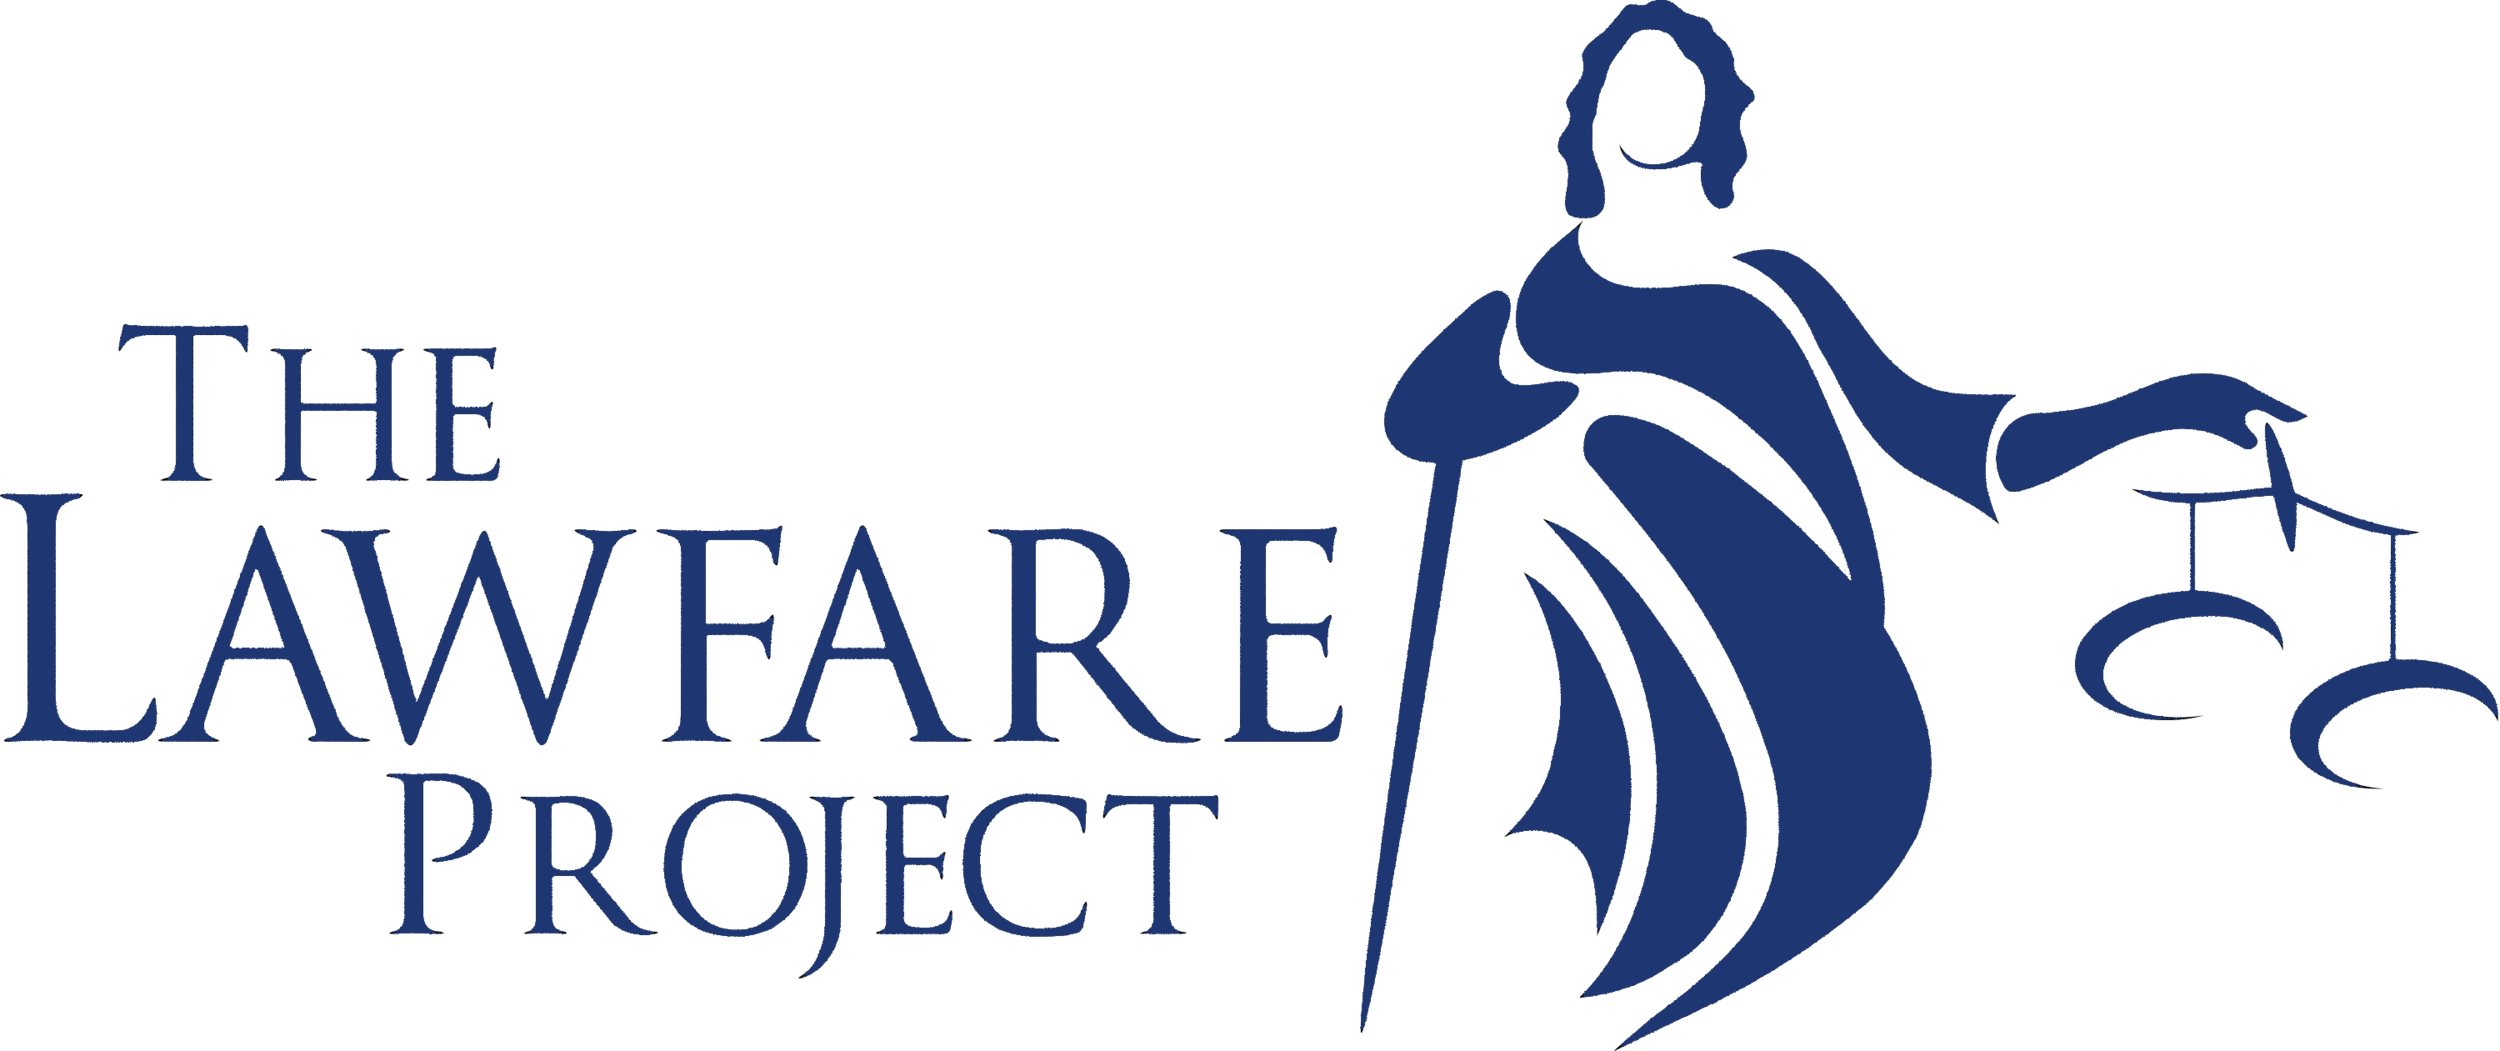 The Lawfare Project